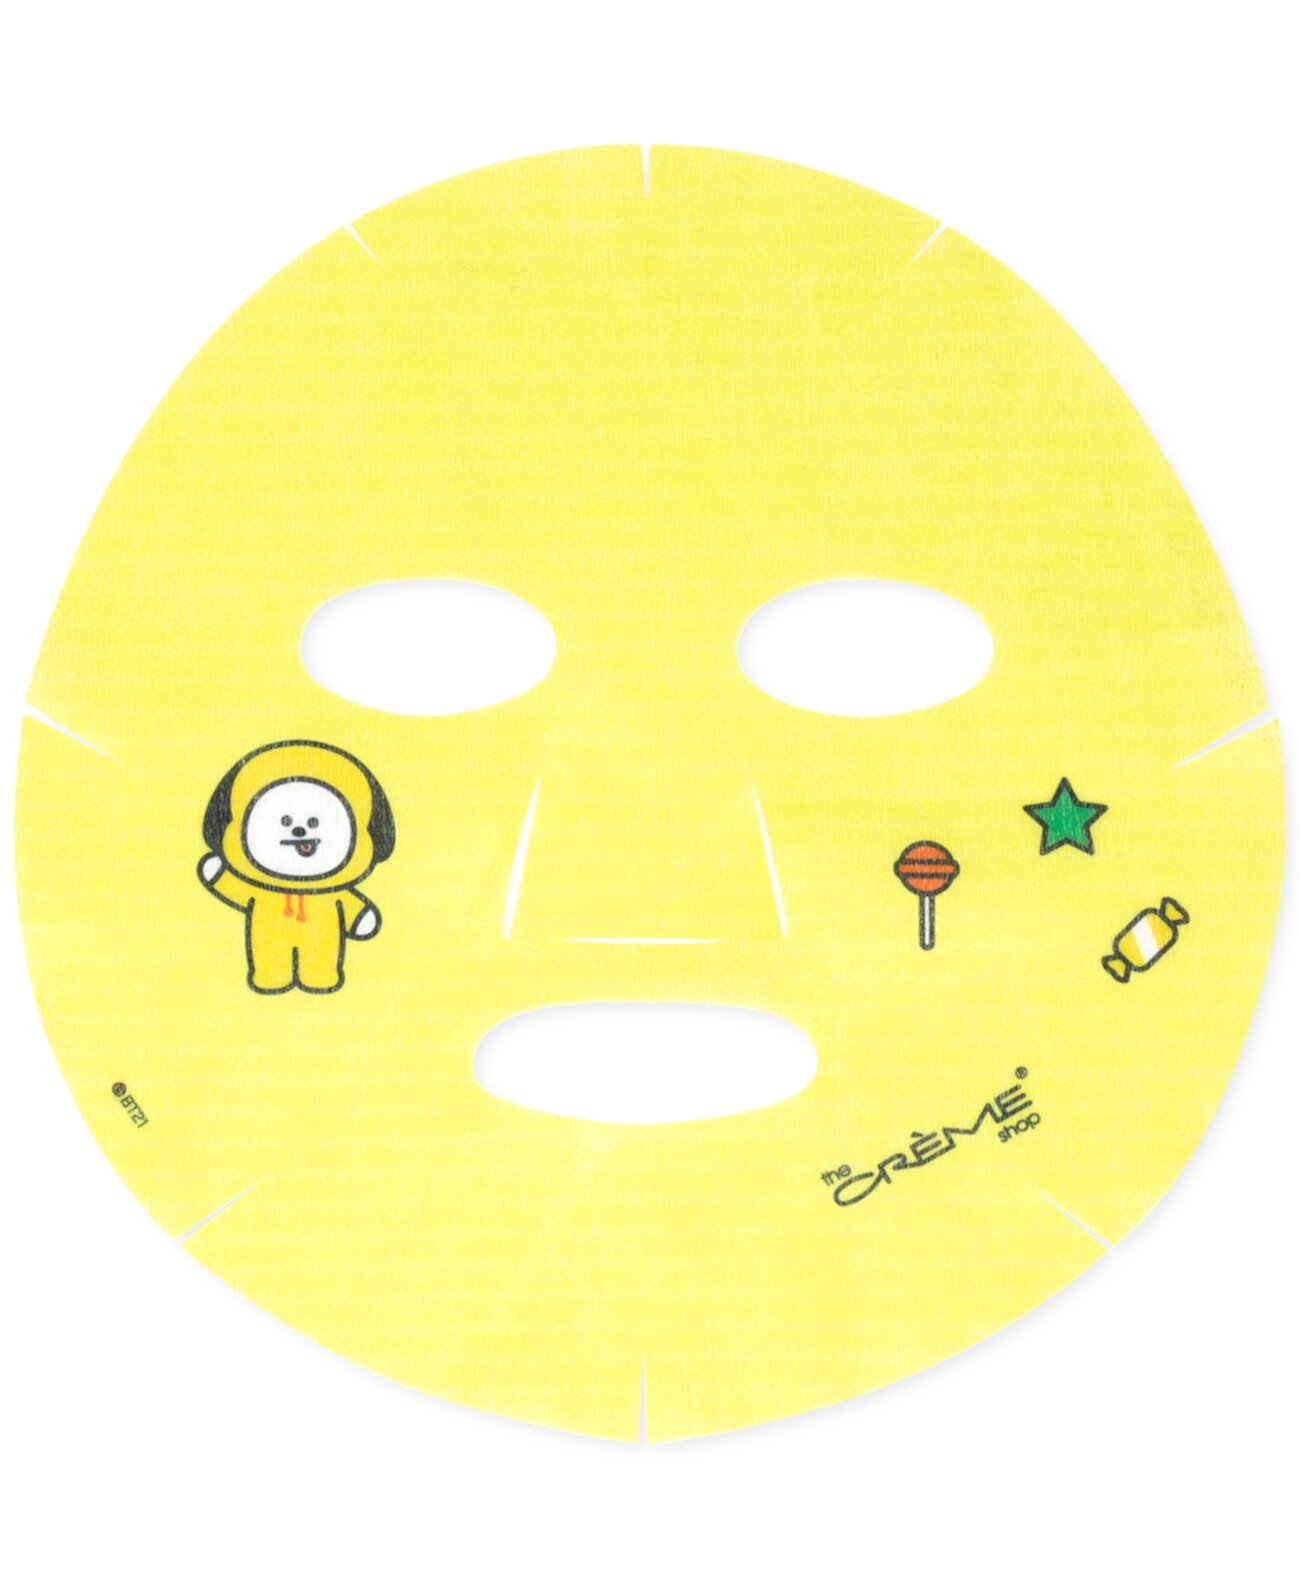 Тканевая маска для лица BT21 Chimmy's Charming Printed Essence Sheet Mask, 3-Pk. The Creme Shop